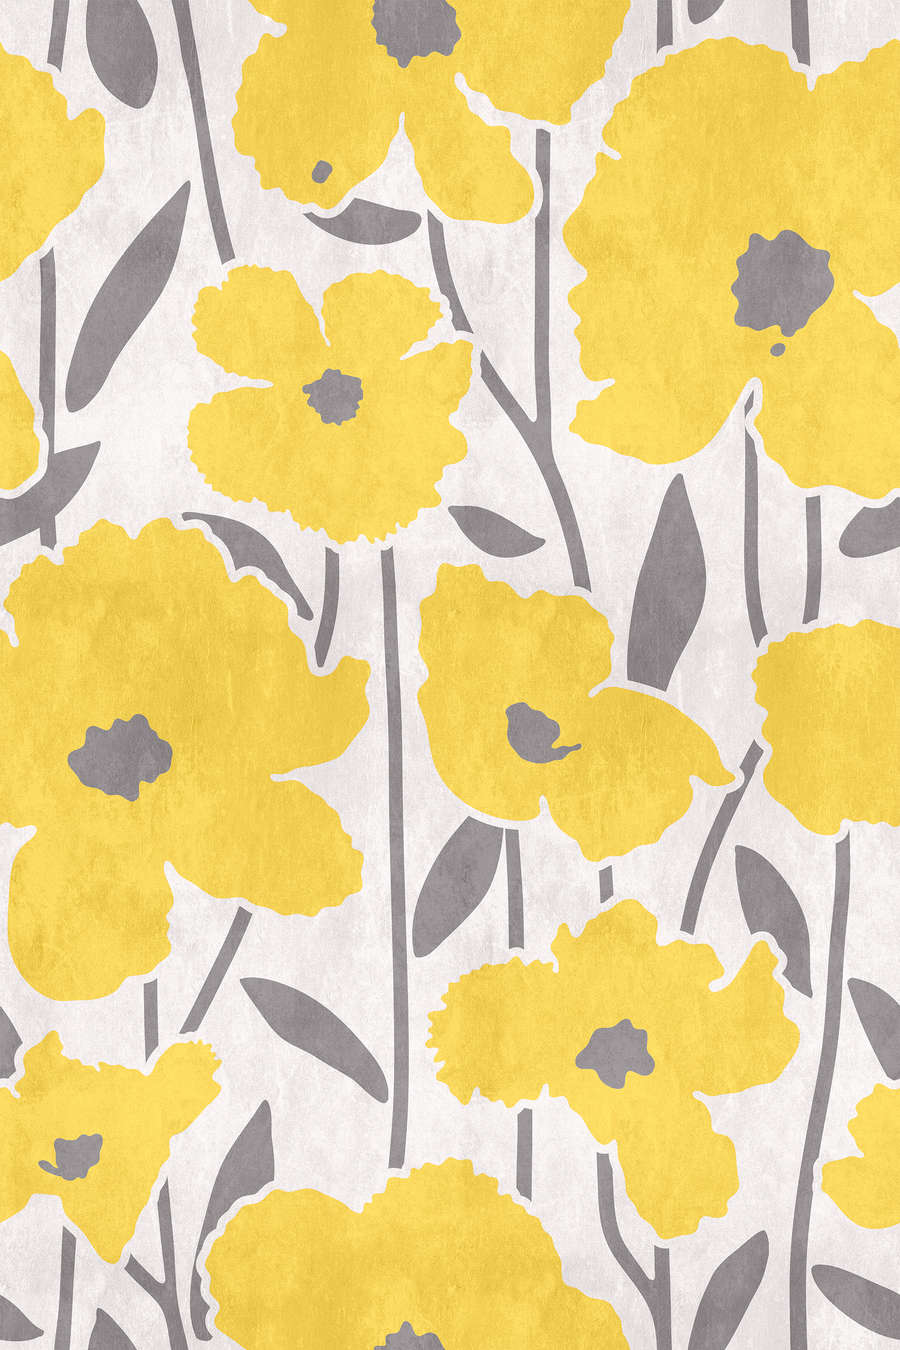             Flower Market 4 - Papel Pintado Floral Amarillo y Gris con Efecto Yeso
        